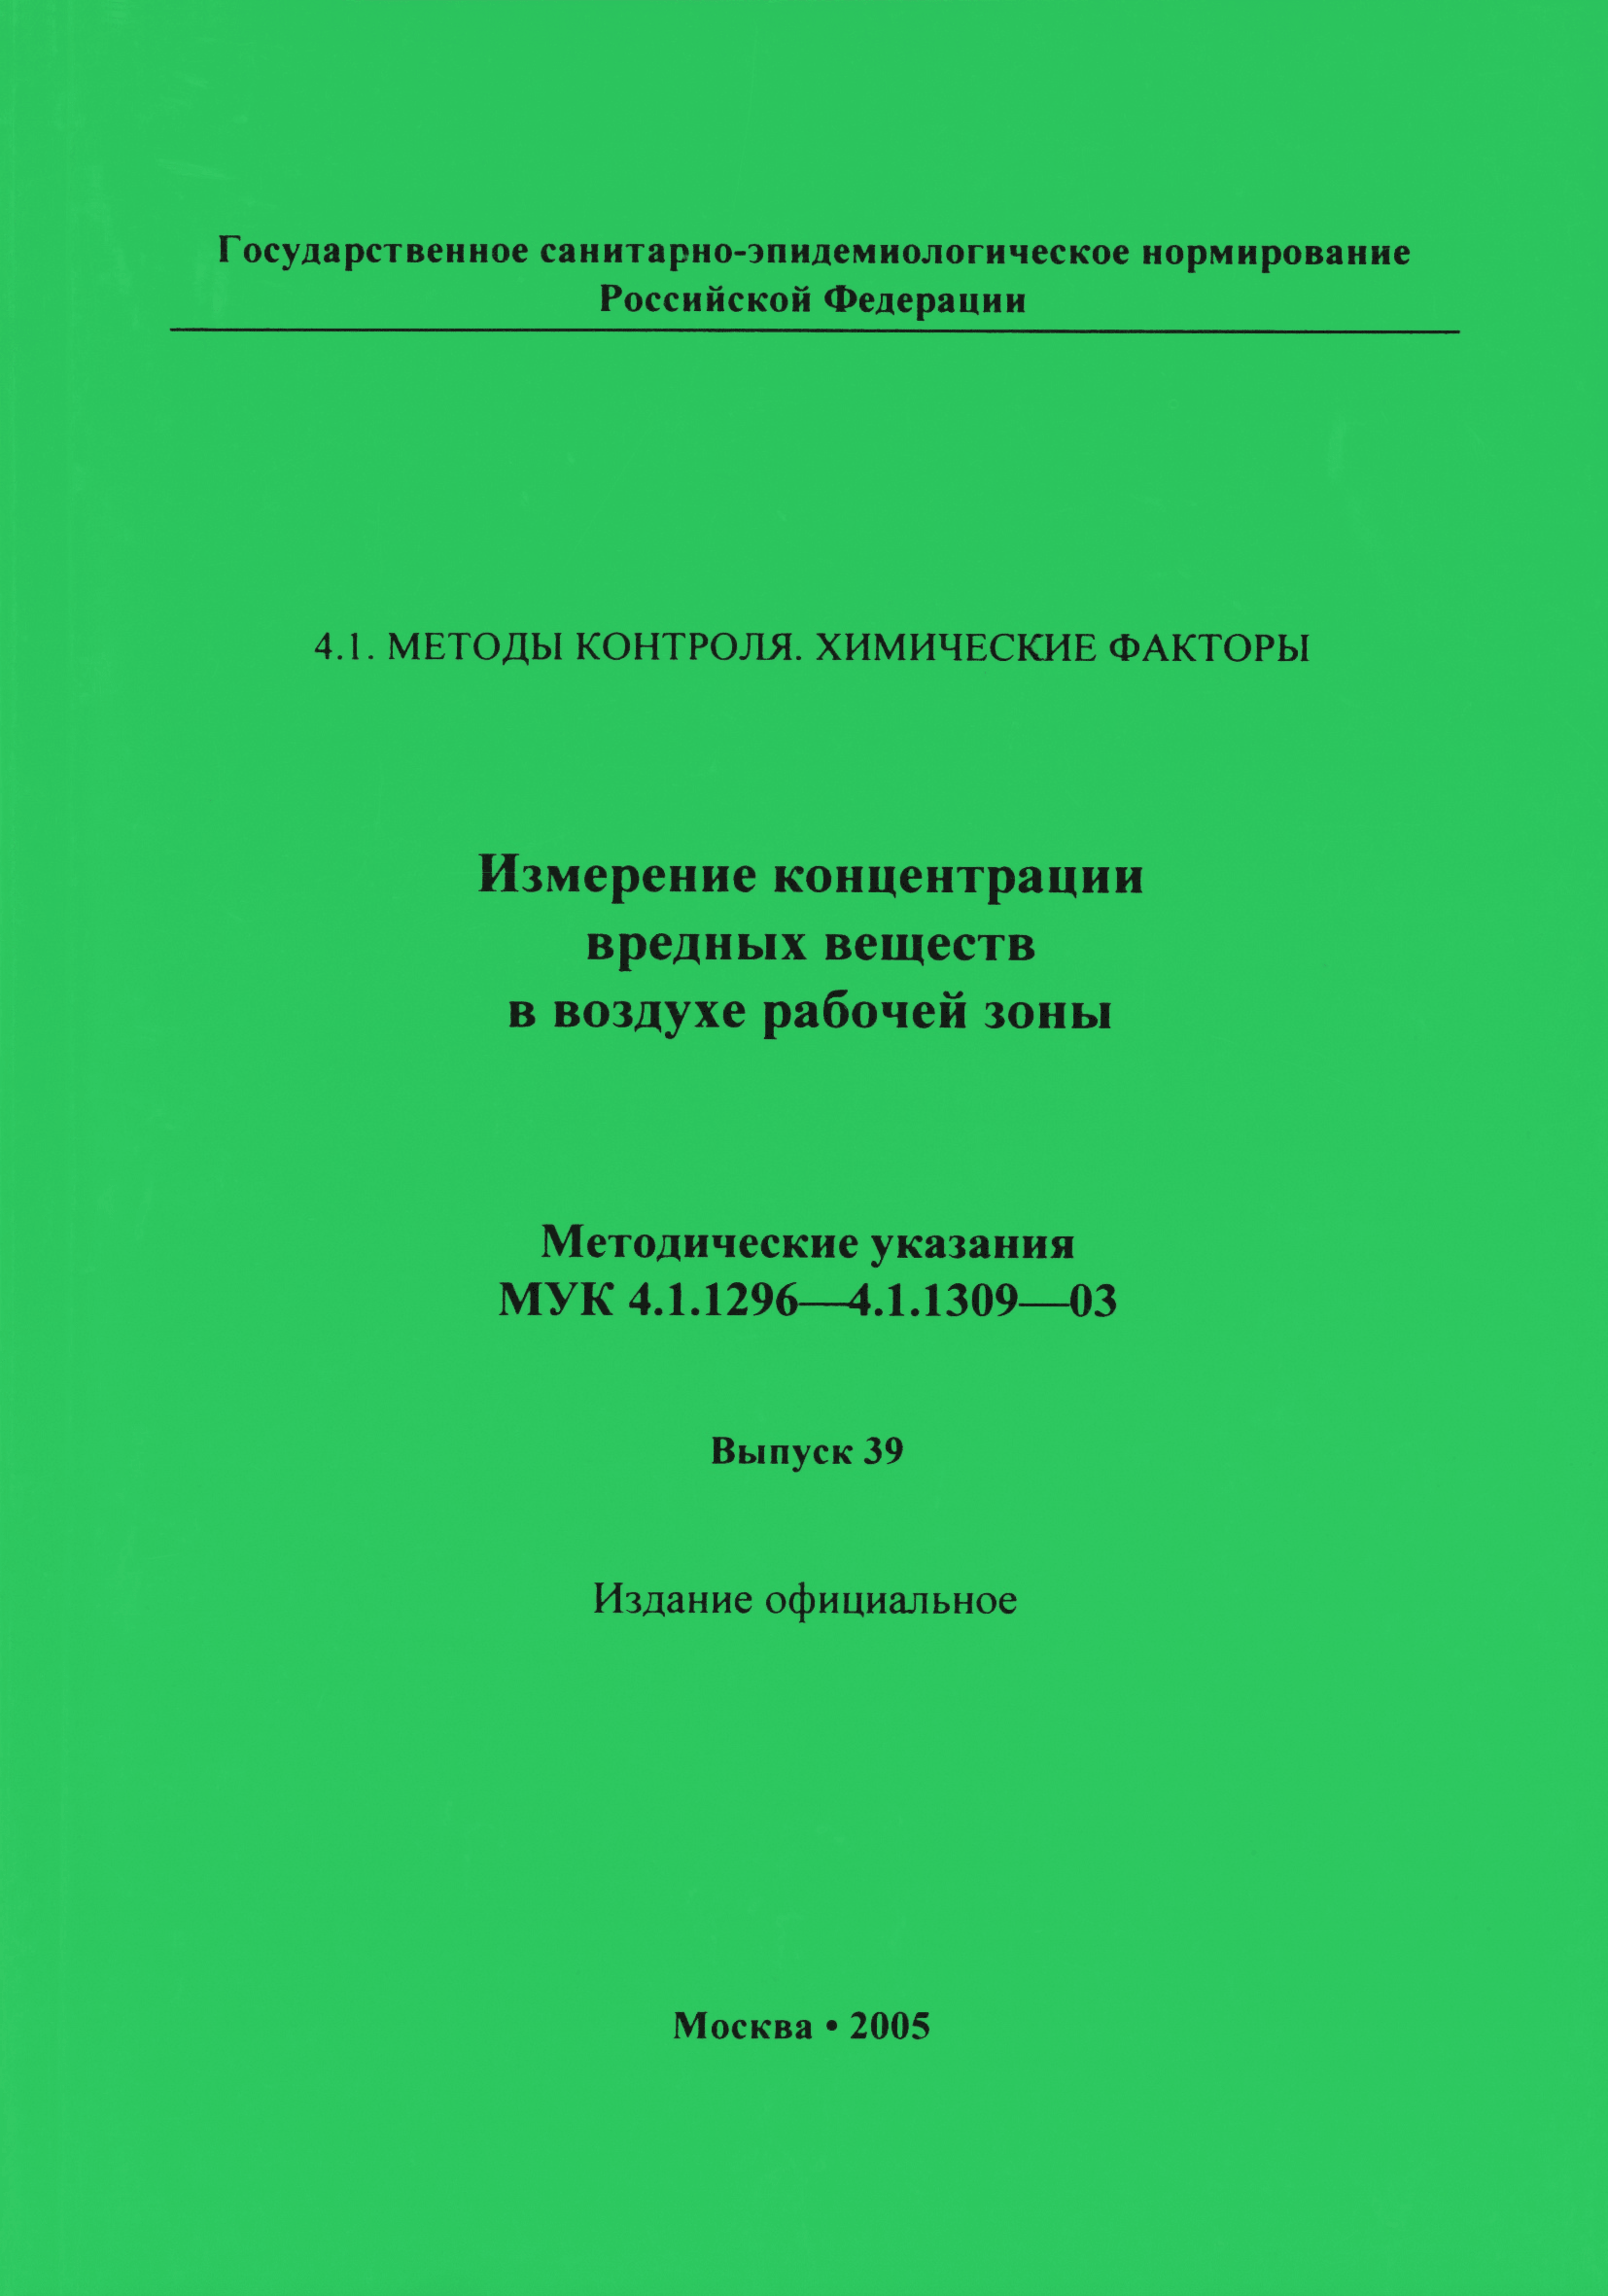 МУК 4.1.1296-03